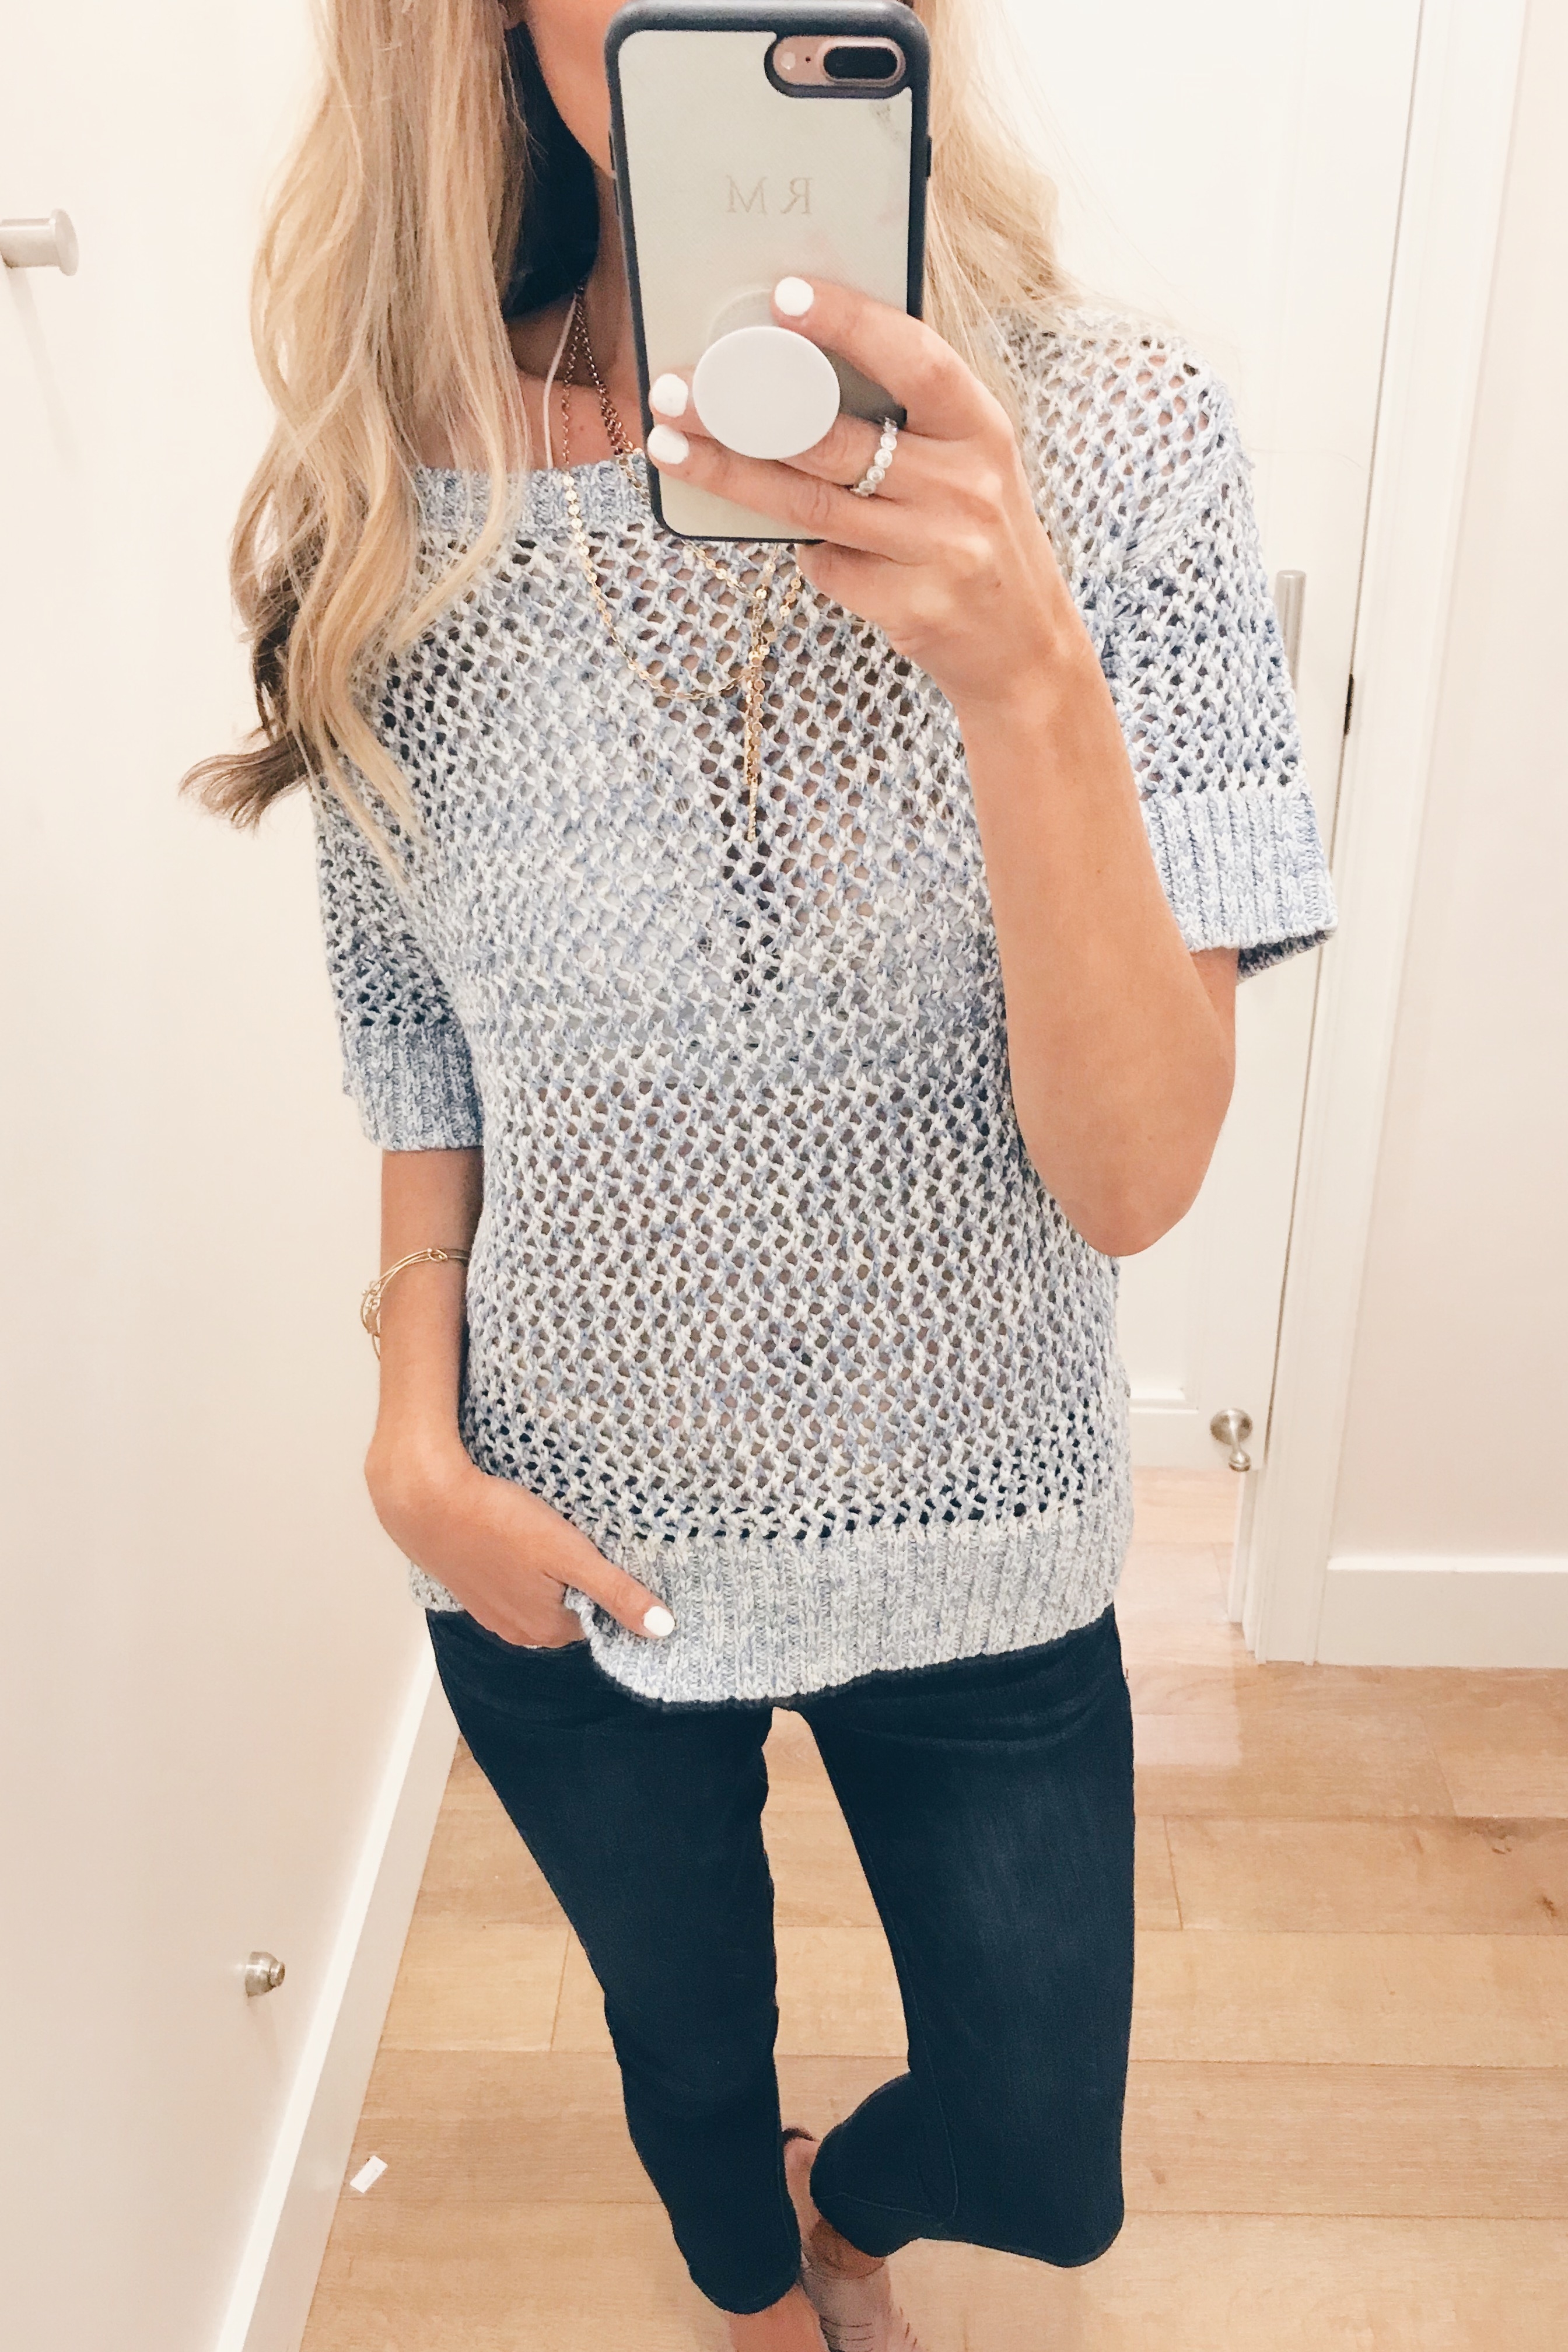 LOFT July 2018 Sale - Short Sleeve Sweater